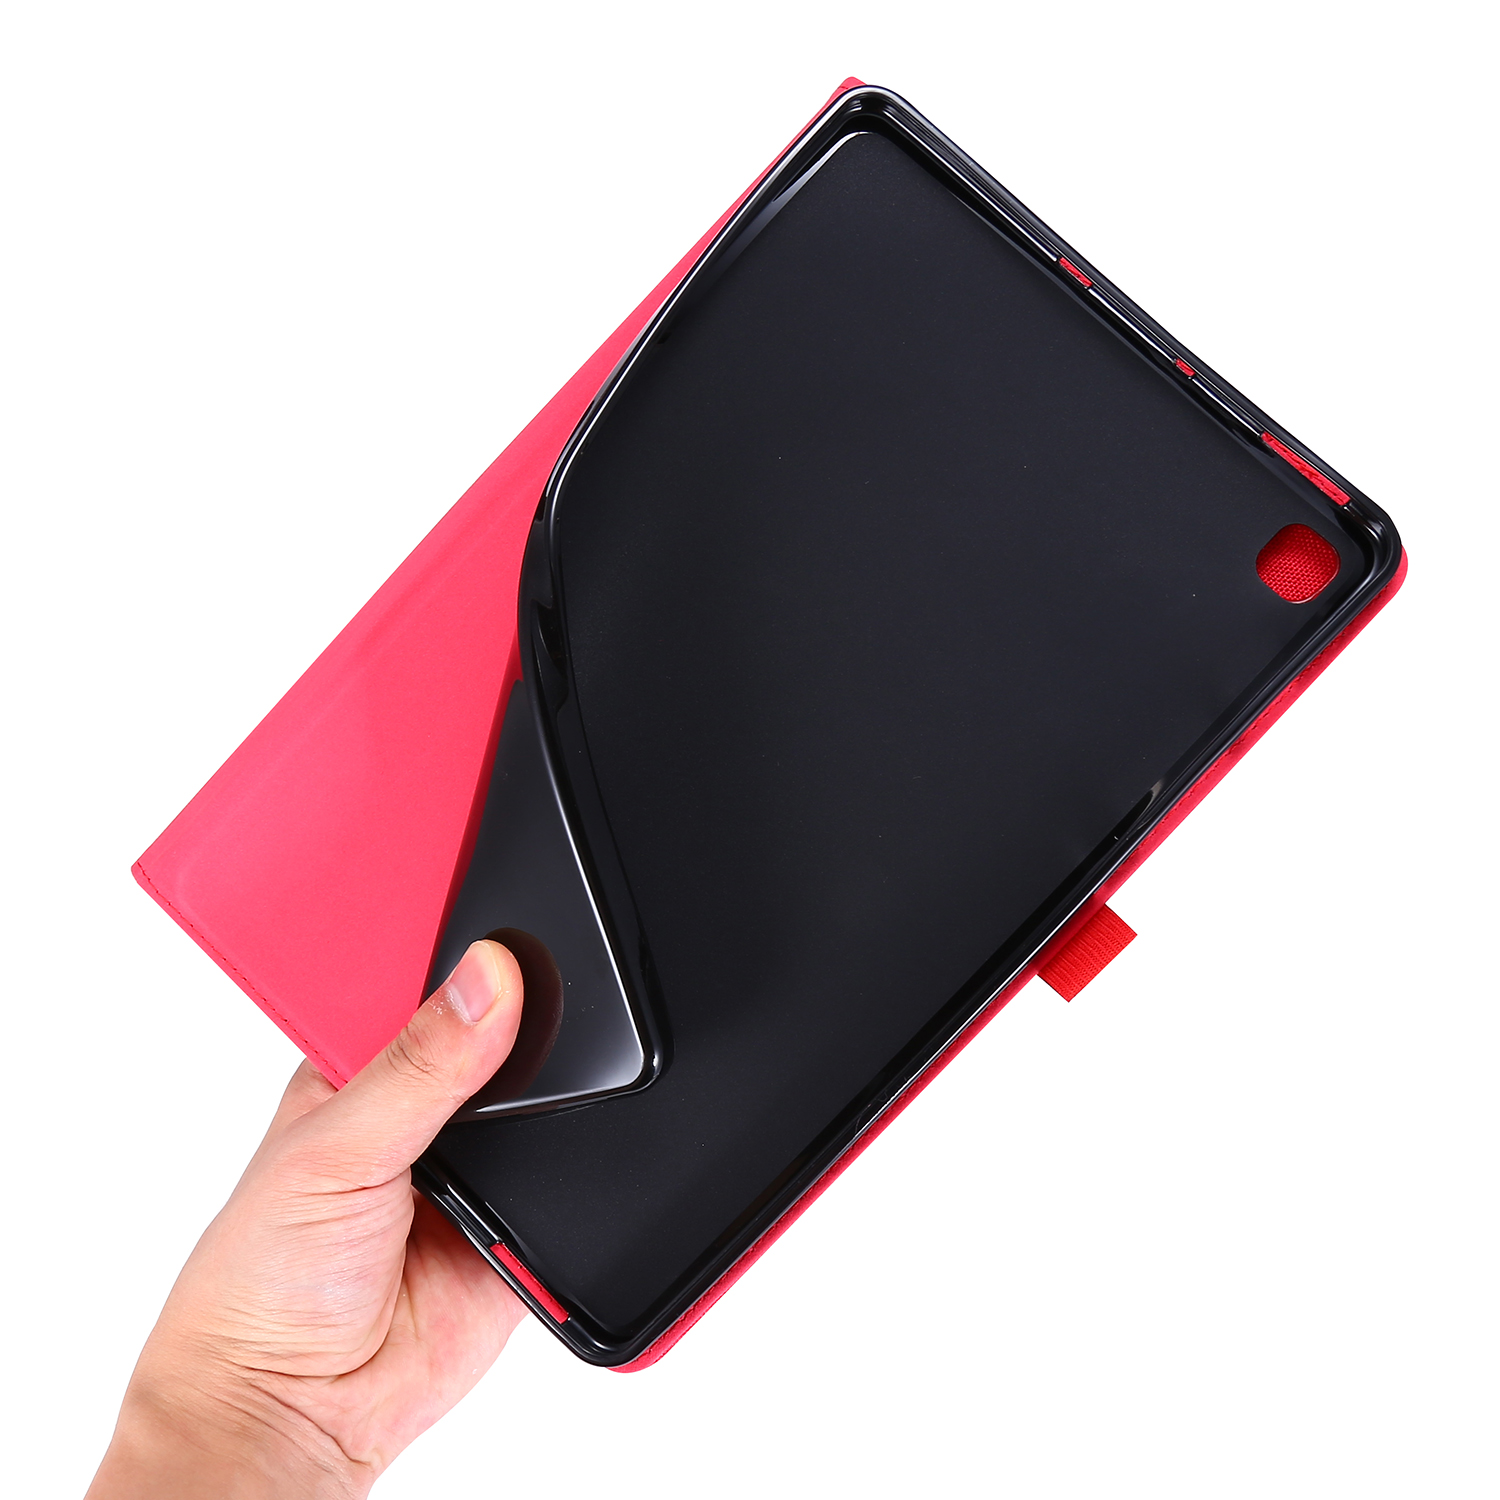 Samsung Lite Hülle Schutzhülle für Galaxy Kunststoff, Bookcover Rot P615 10.4 S6 SM-P610 LOBWERK Zoll Tab